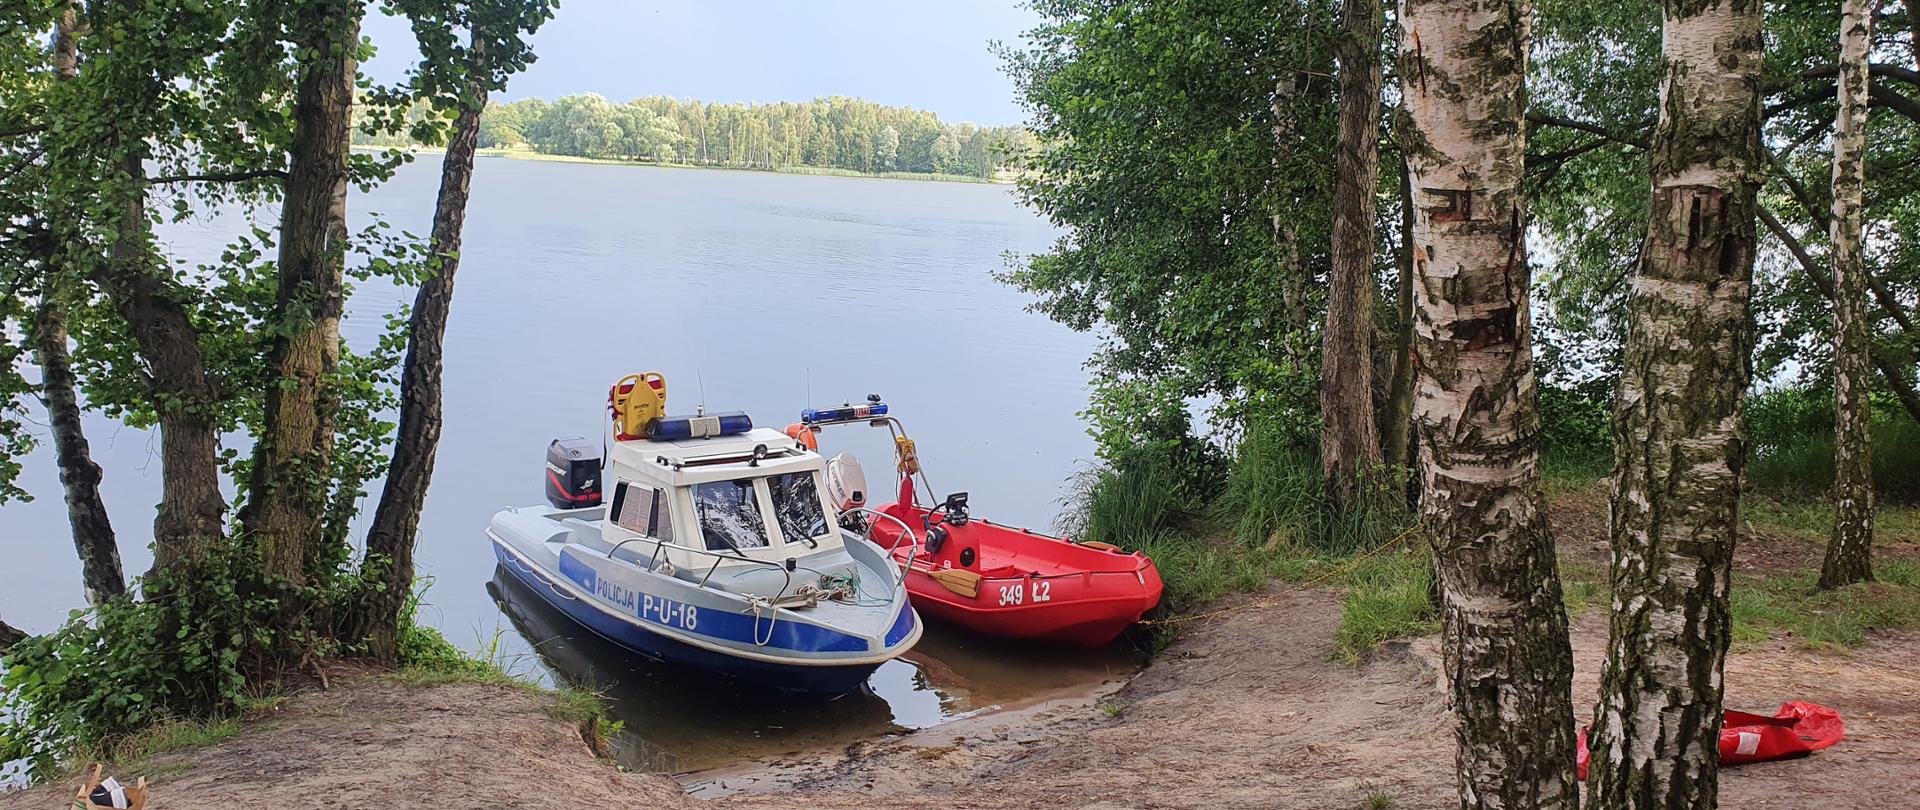 Na zdjęciu widzimy zacumowane do brzegu dwie łodzie ratownicze. Łódka po prawej to łódź strażacka koloru czerwonego, natomiast po lewej stronie kadru to łódź policyjna koloru biało niebieskiego. W tle widzimy jezioro oraz drzewa. 